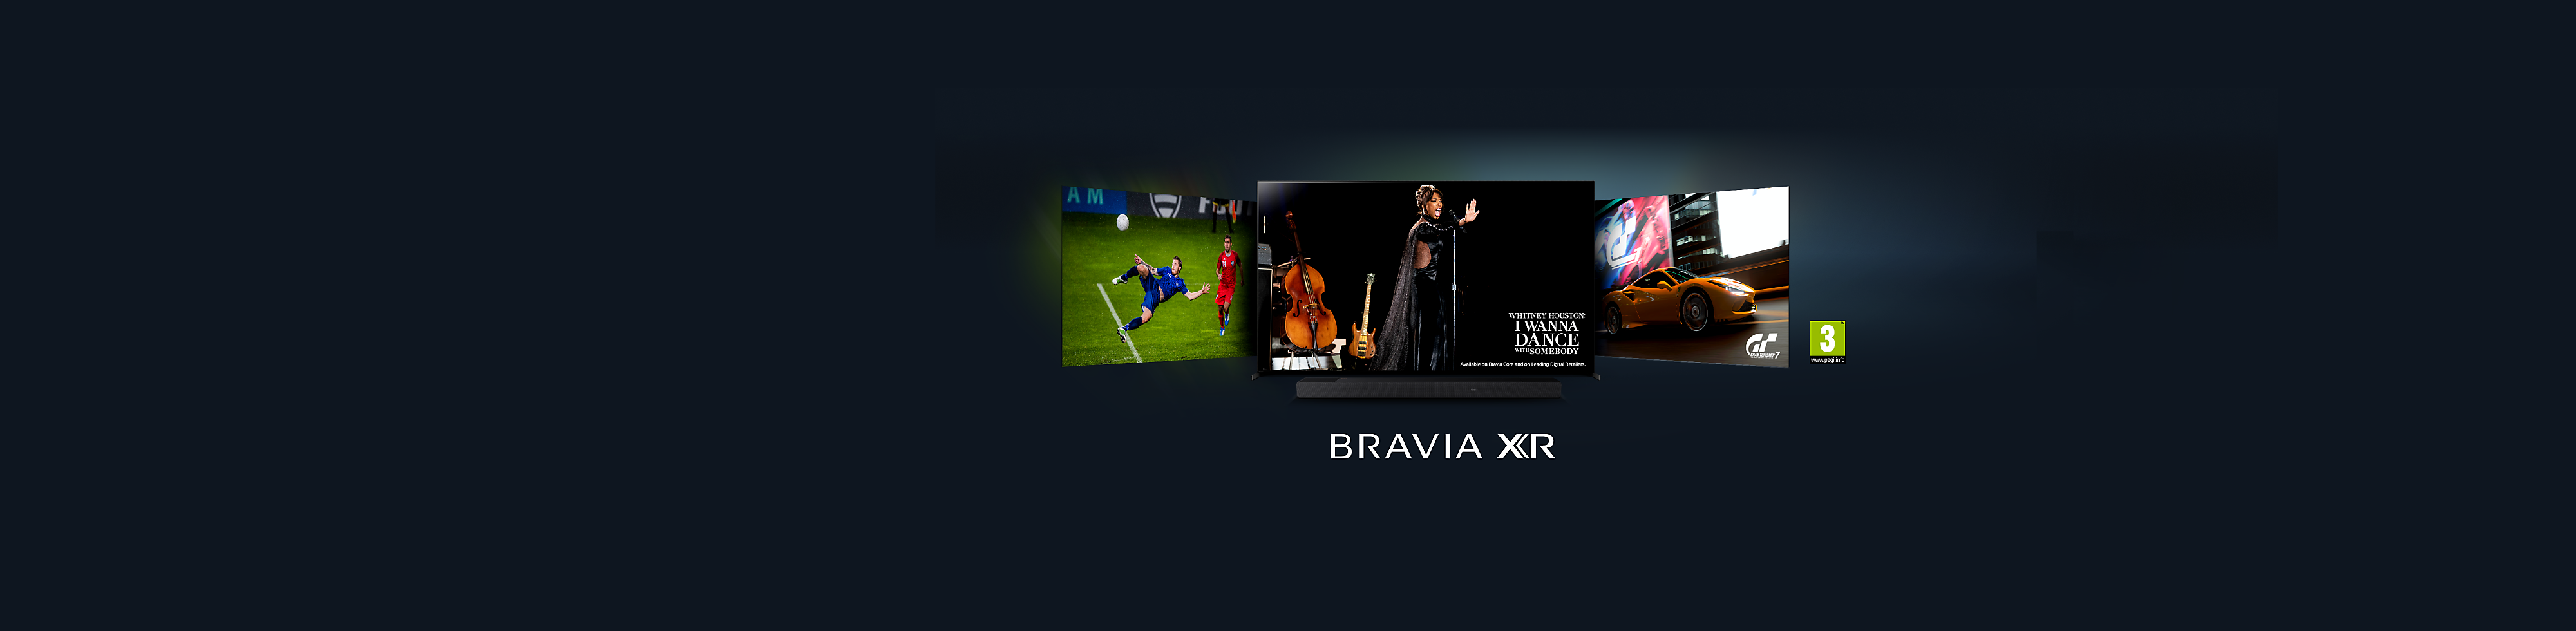 Descubra a nova gama de TVs BRAVIA XR